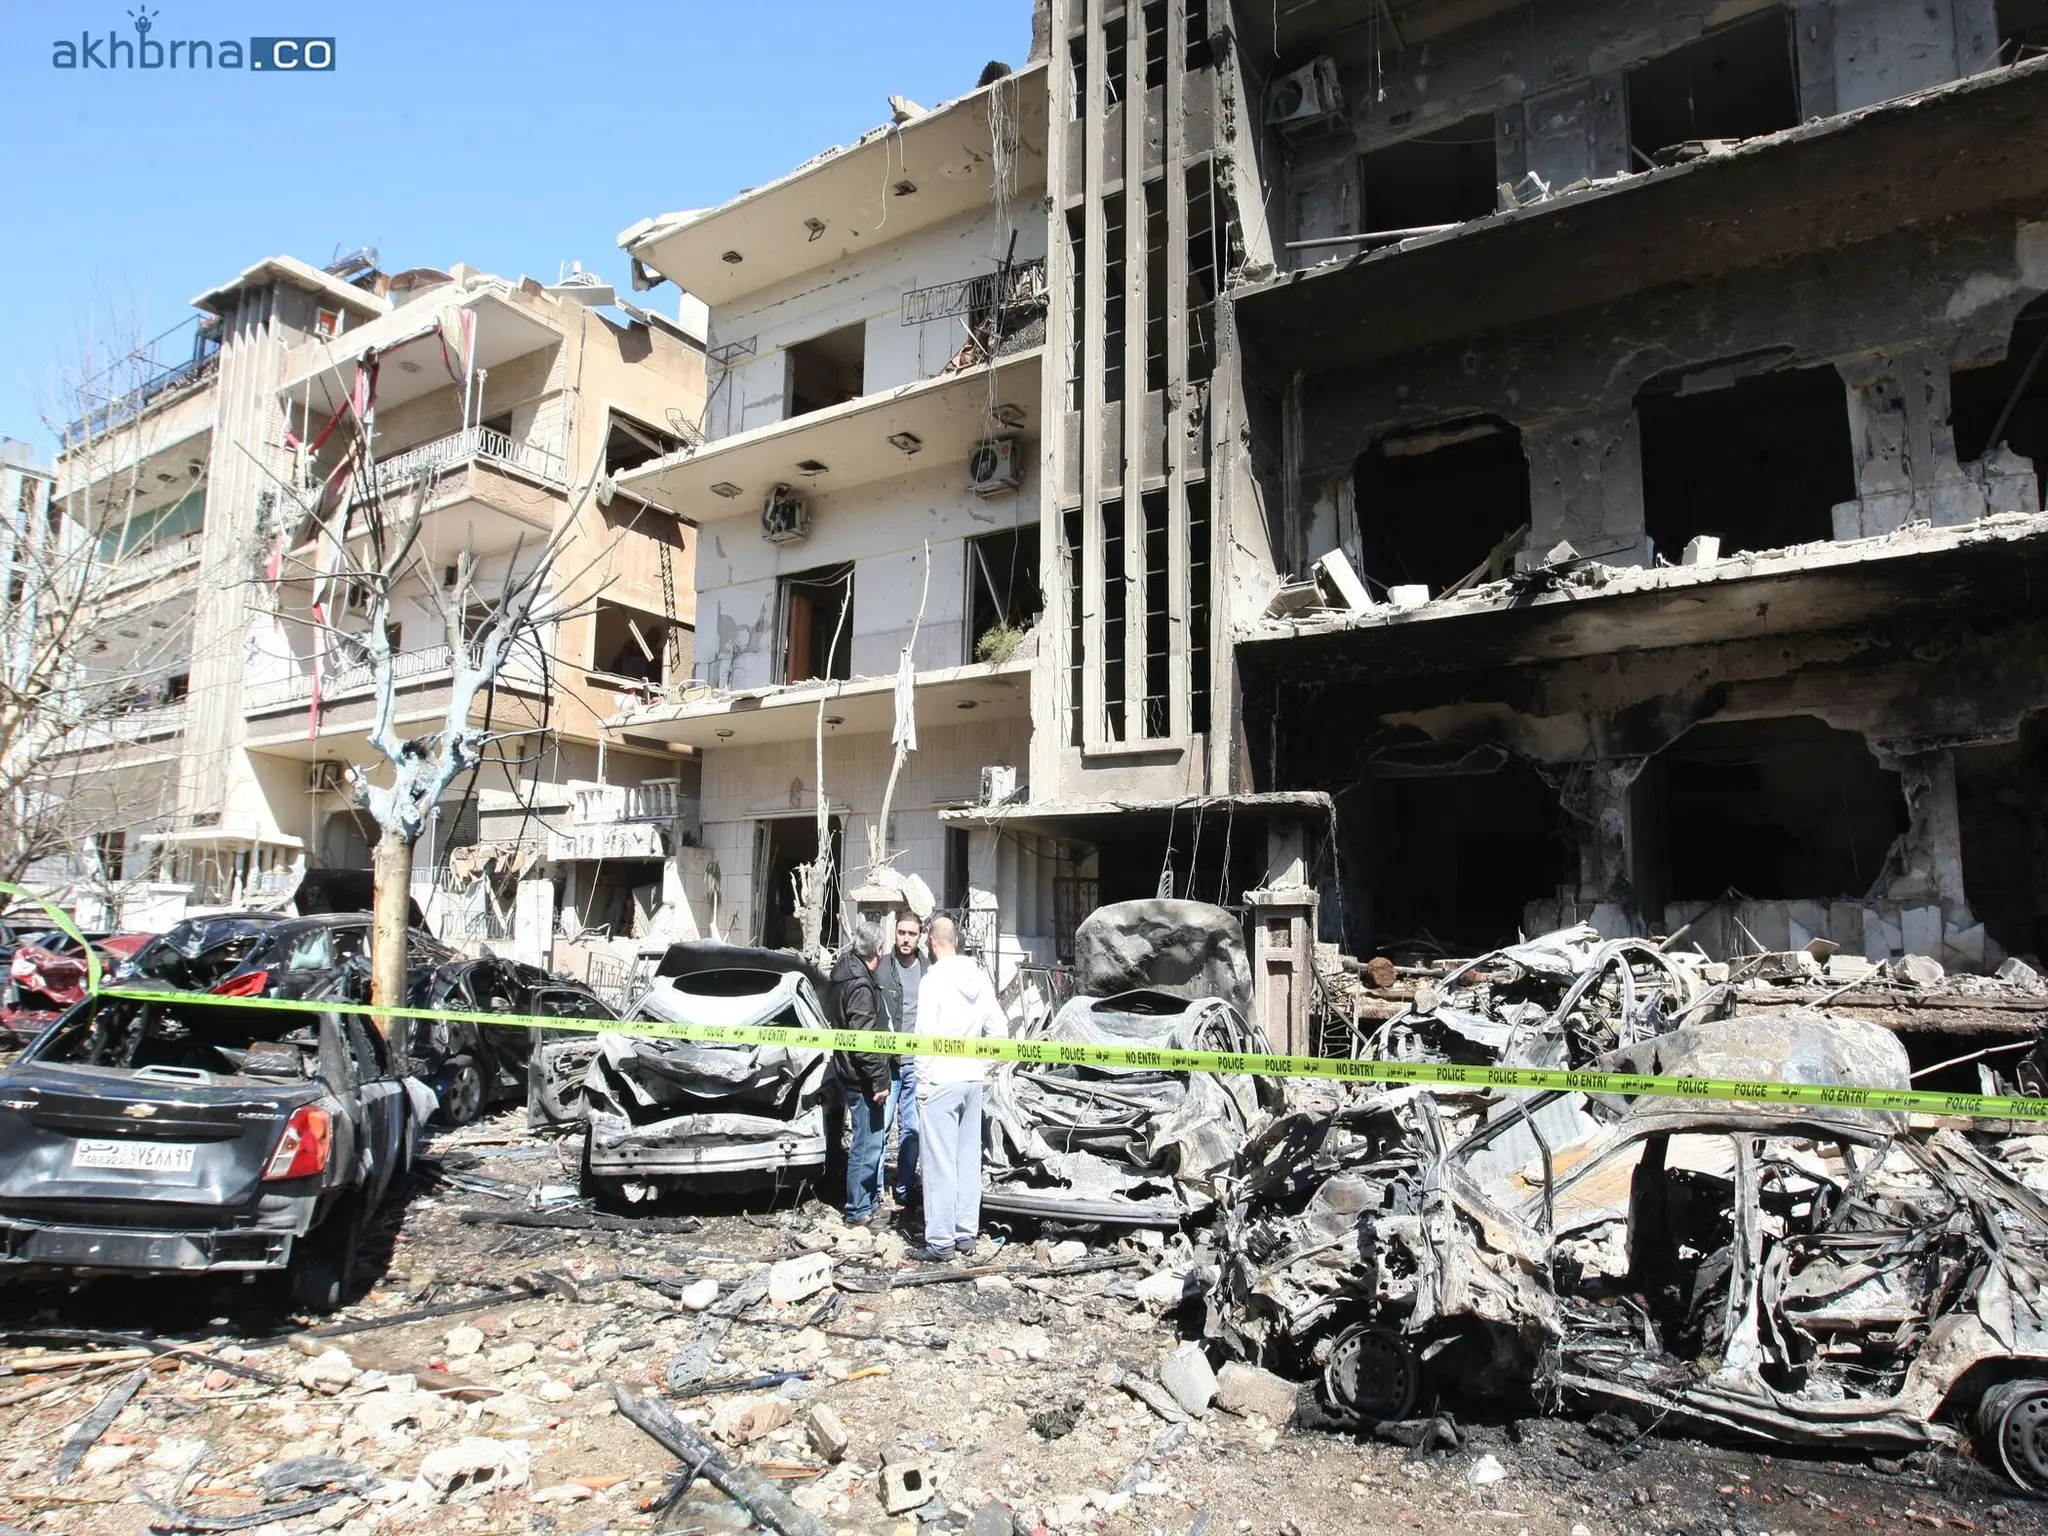 وكالة الأنباء السورية تعلن عن هجوم إسرائيلي يستهدف مبنى سكنيا في حي المزِة بدمشق